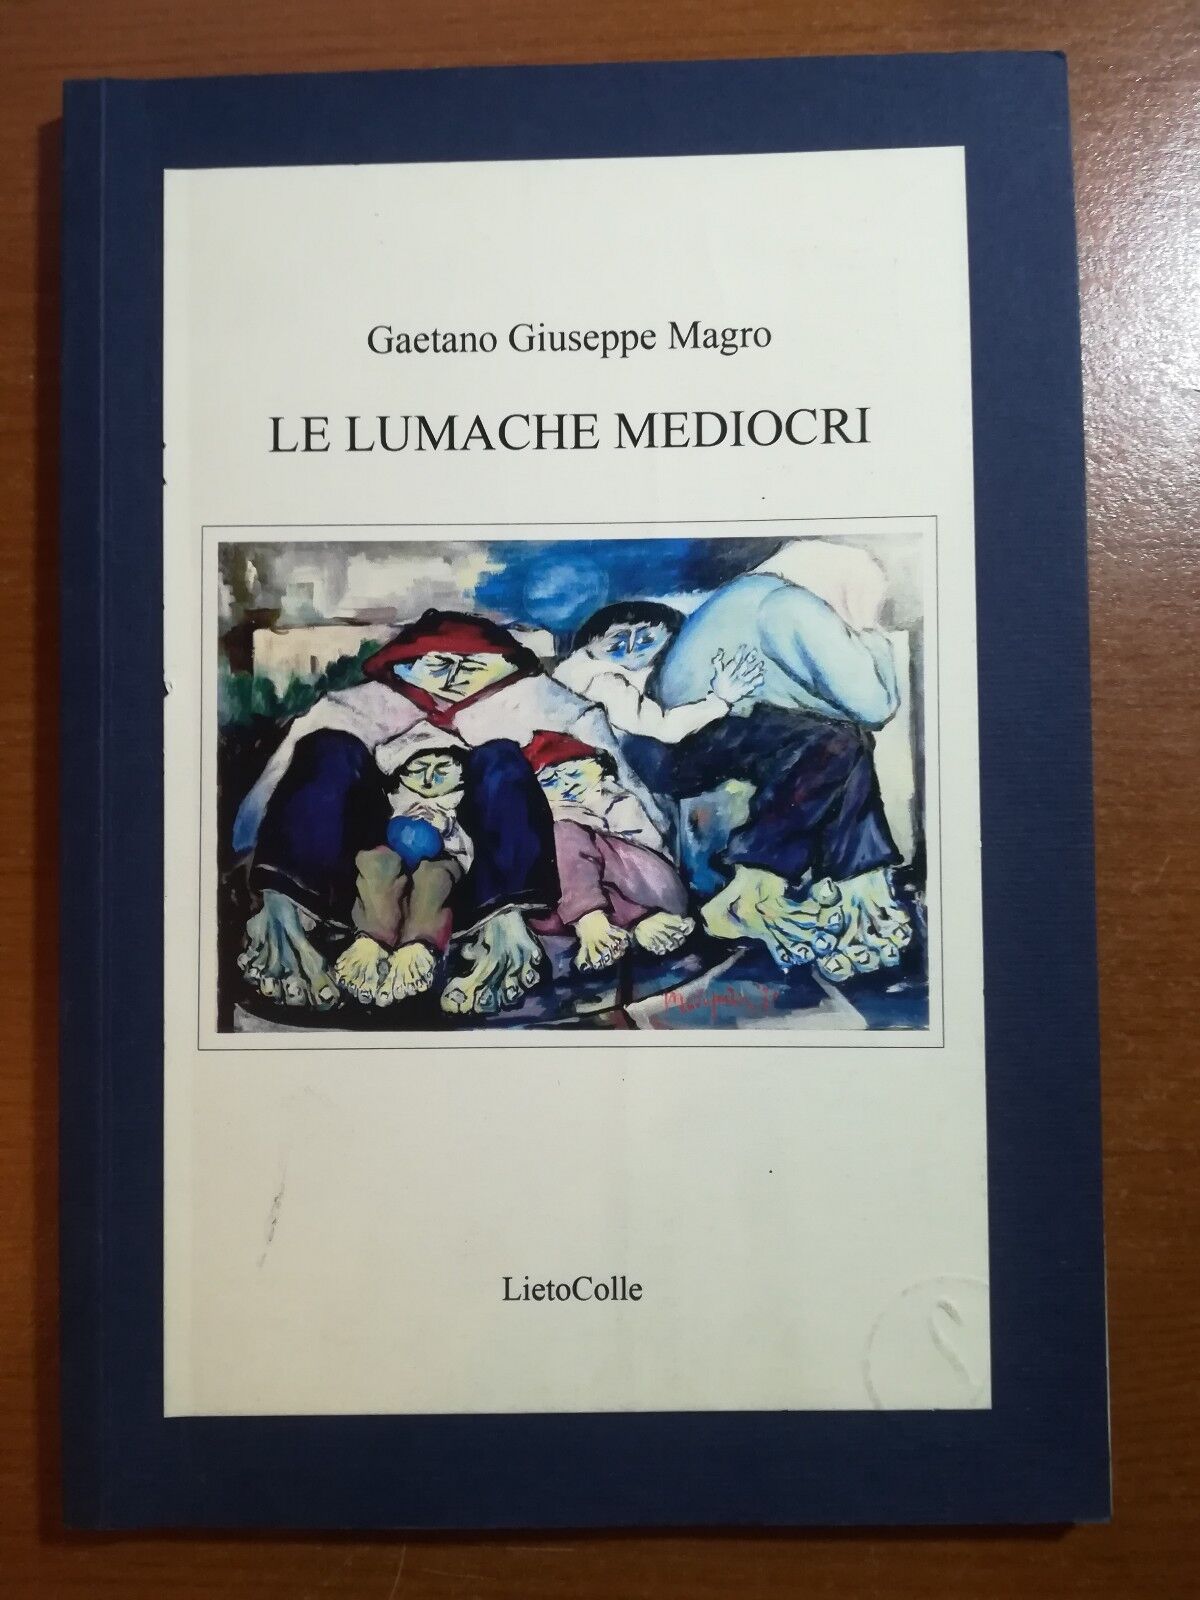 Le lumache mediocri - Gaetano Giuseppe Magro - LietoColle - 2010 - M